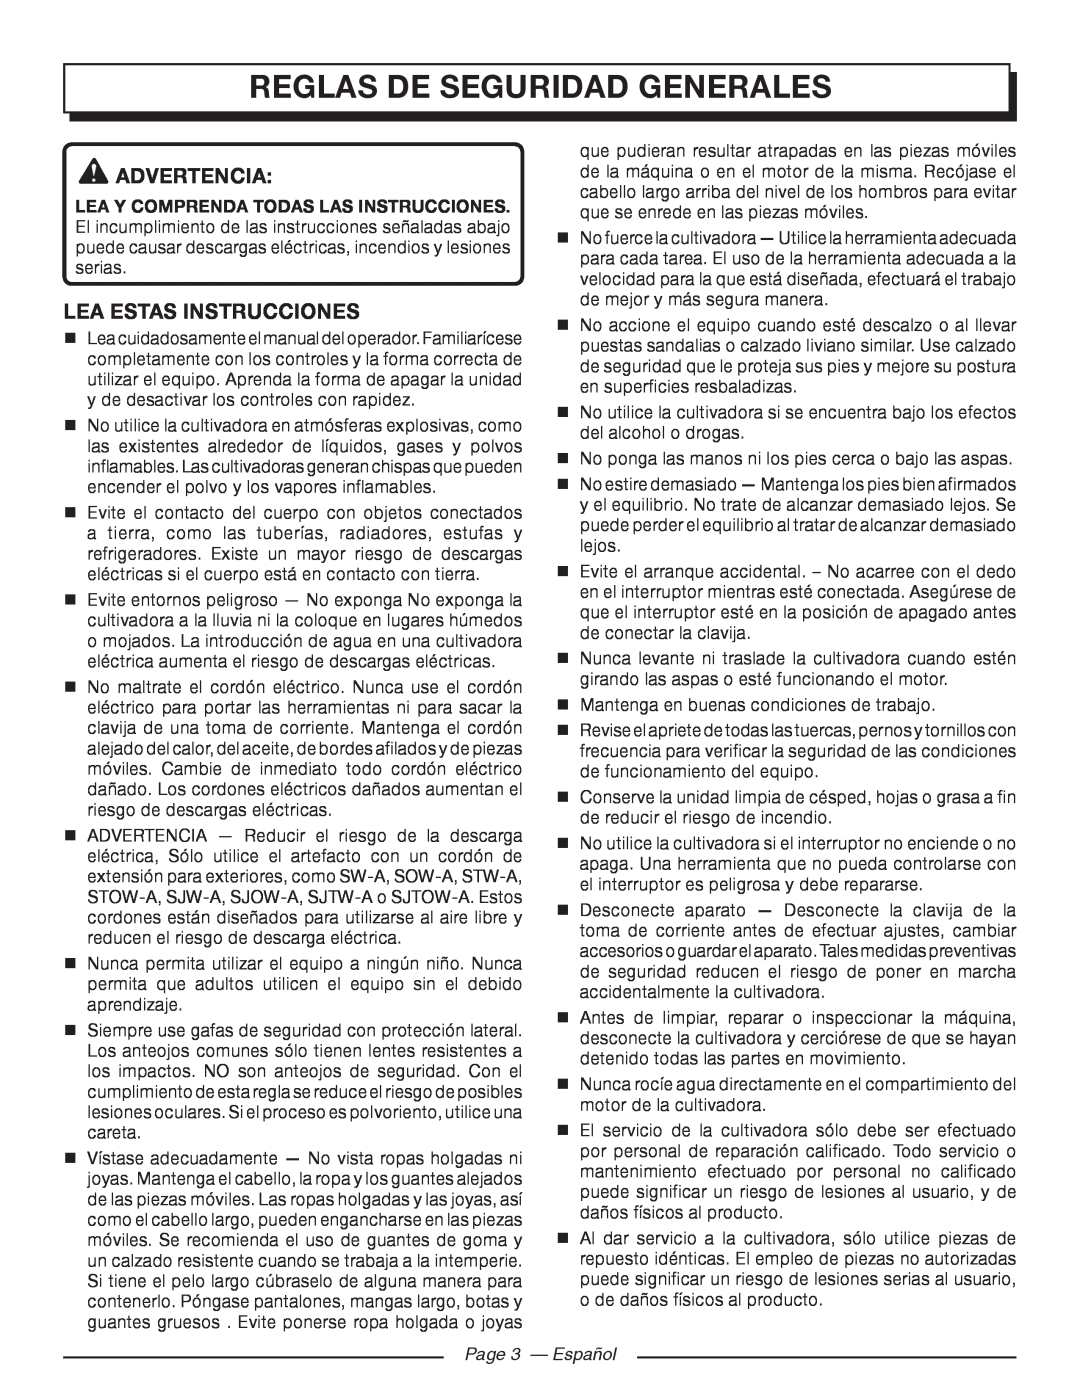 Homelite UT46510 manuel dutilisation Reglas De Seguridad Generales, Advertencia, Lea Estas Instrucciones, Page 3 - Español 